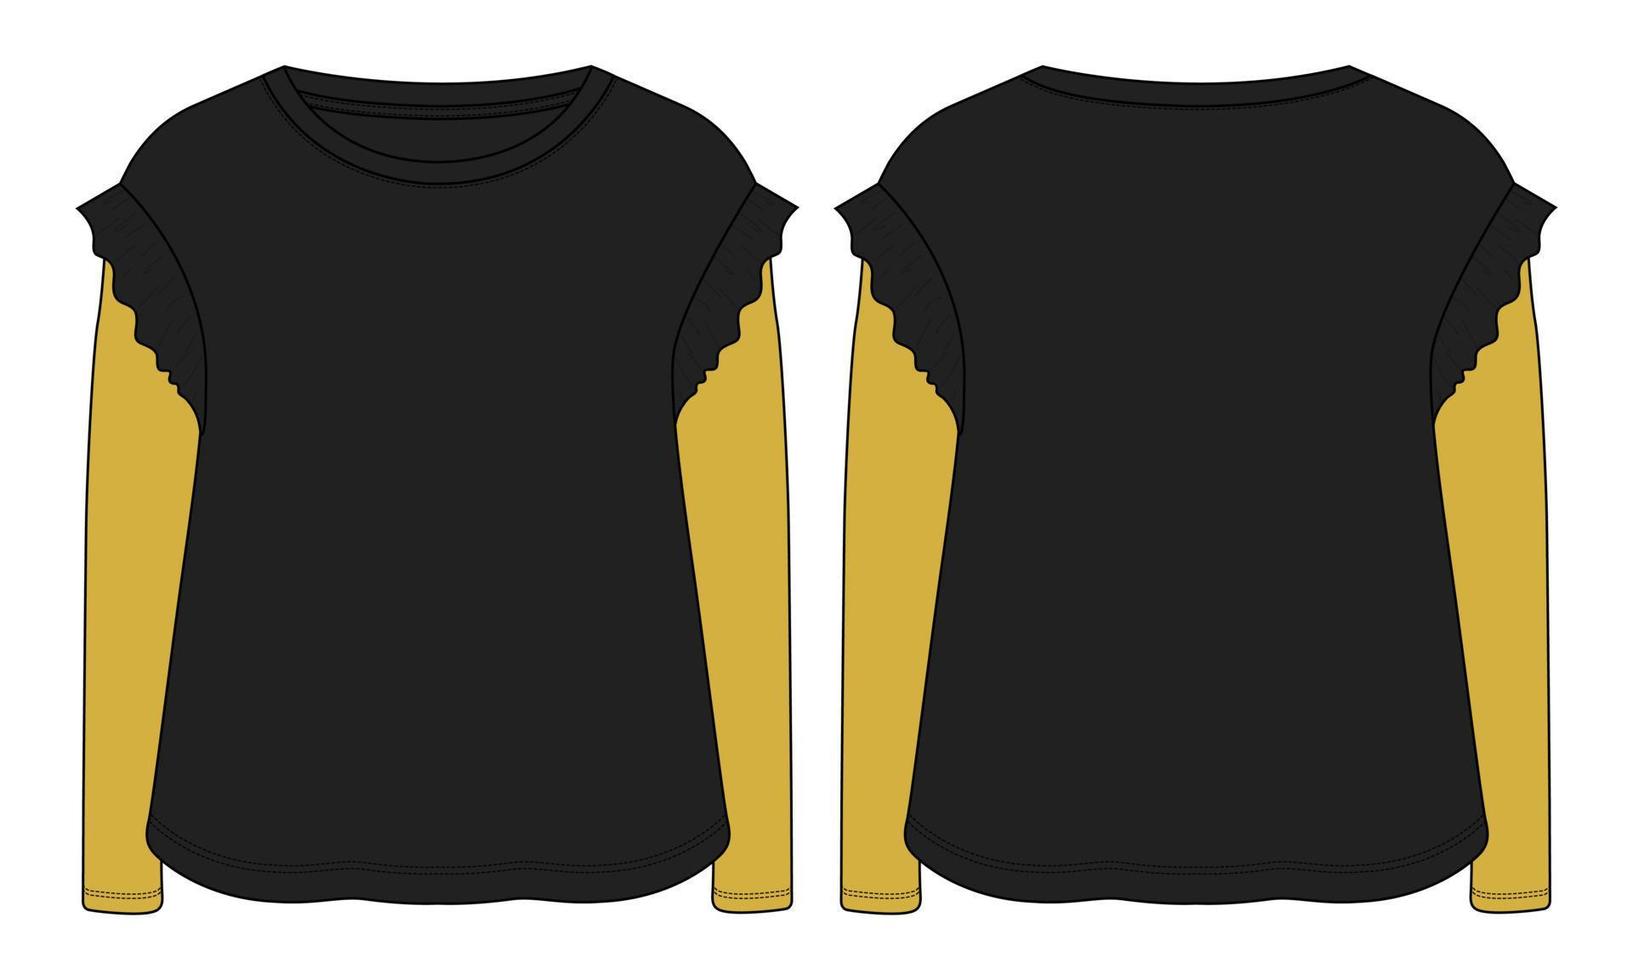 camiseta de manga longa tops técnica de moda desenho plano ilustração vetorial modelo de cor preta para meninas vetor